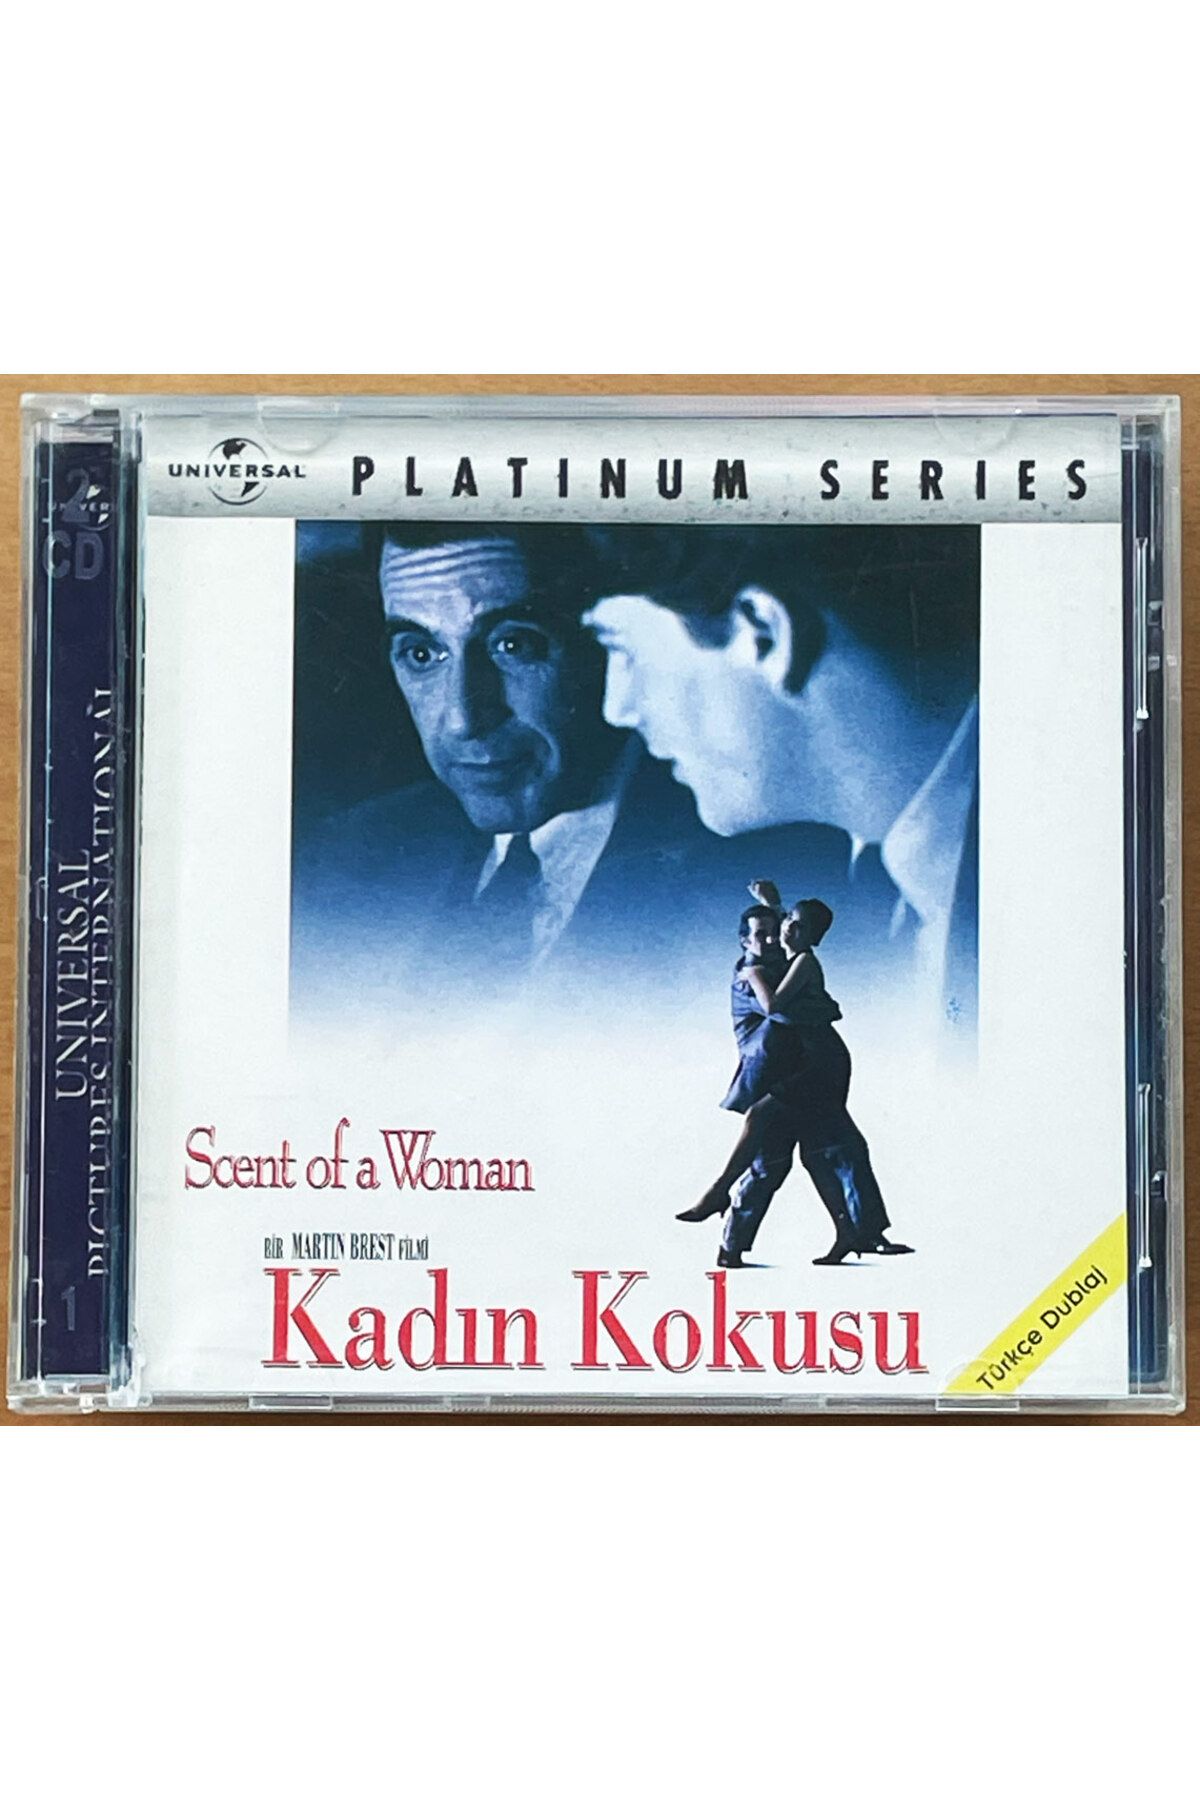 Kovak Kailyn Kadın Kokusu (1992)  VCD Film ' Al Pacino '